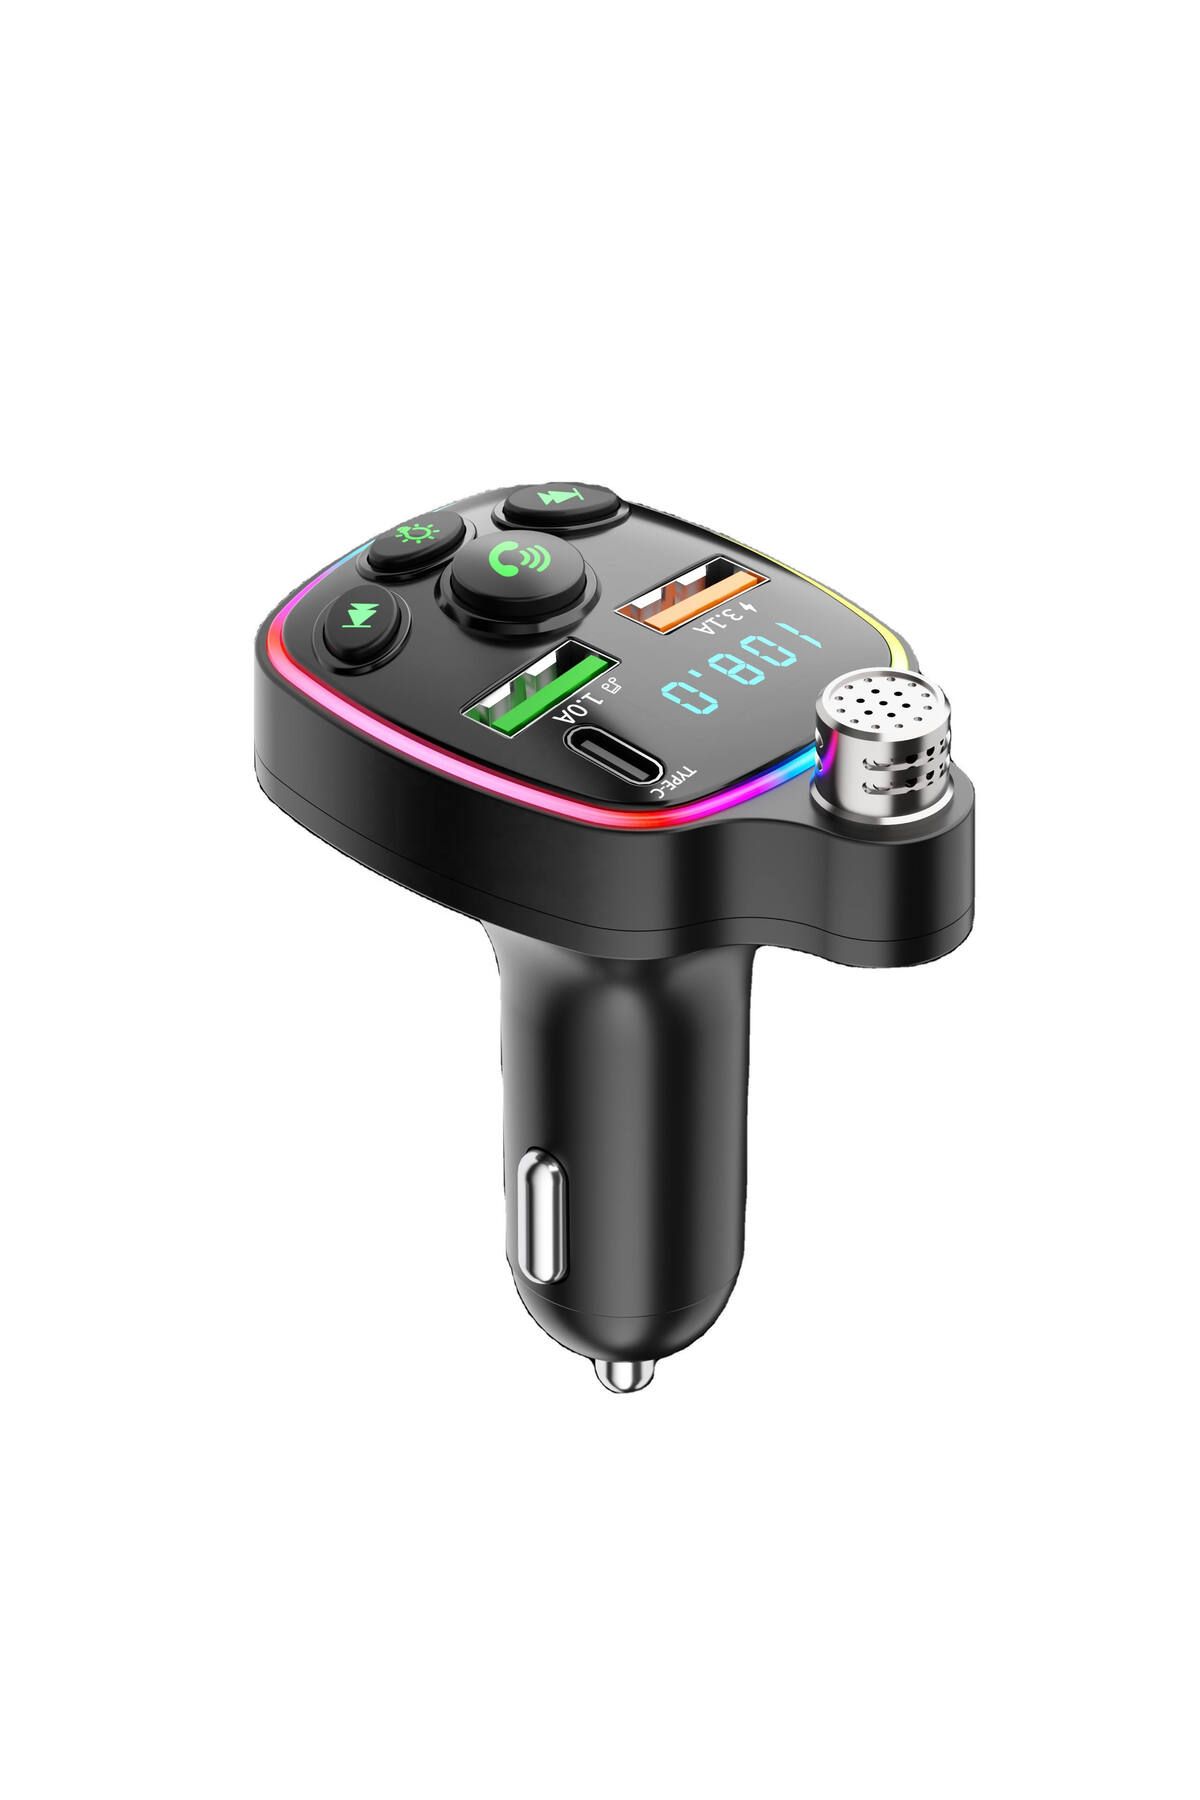 Deppo Trend Bluetooth Araç Kiti Araç Fm Transmitter USB Type-C MP3 SD Kart Flash Için Uygun PD Çakmaklık Girişli